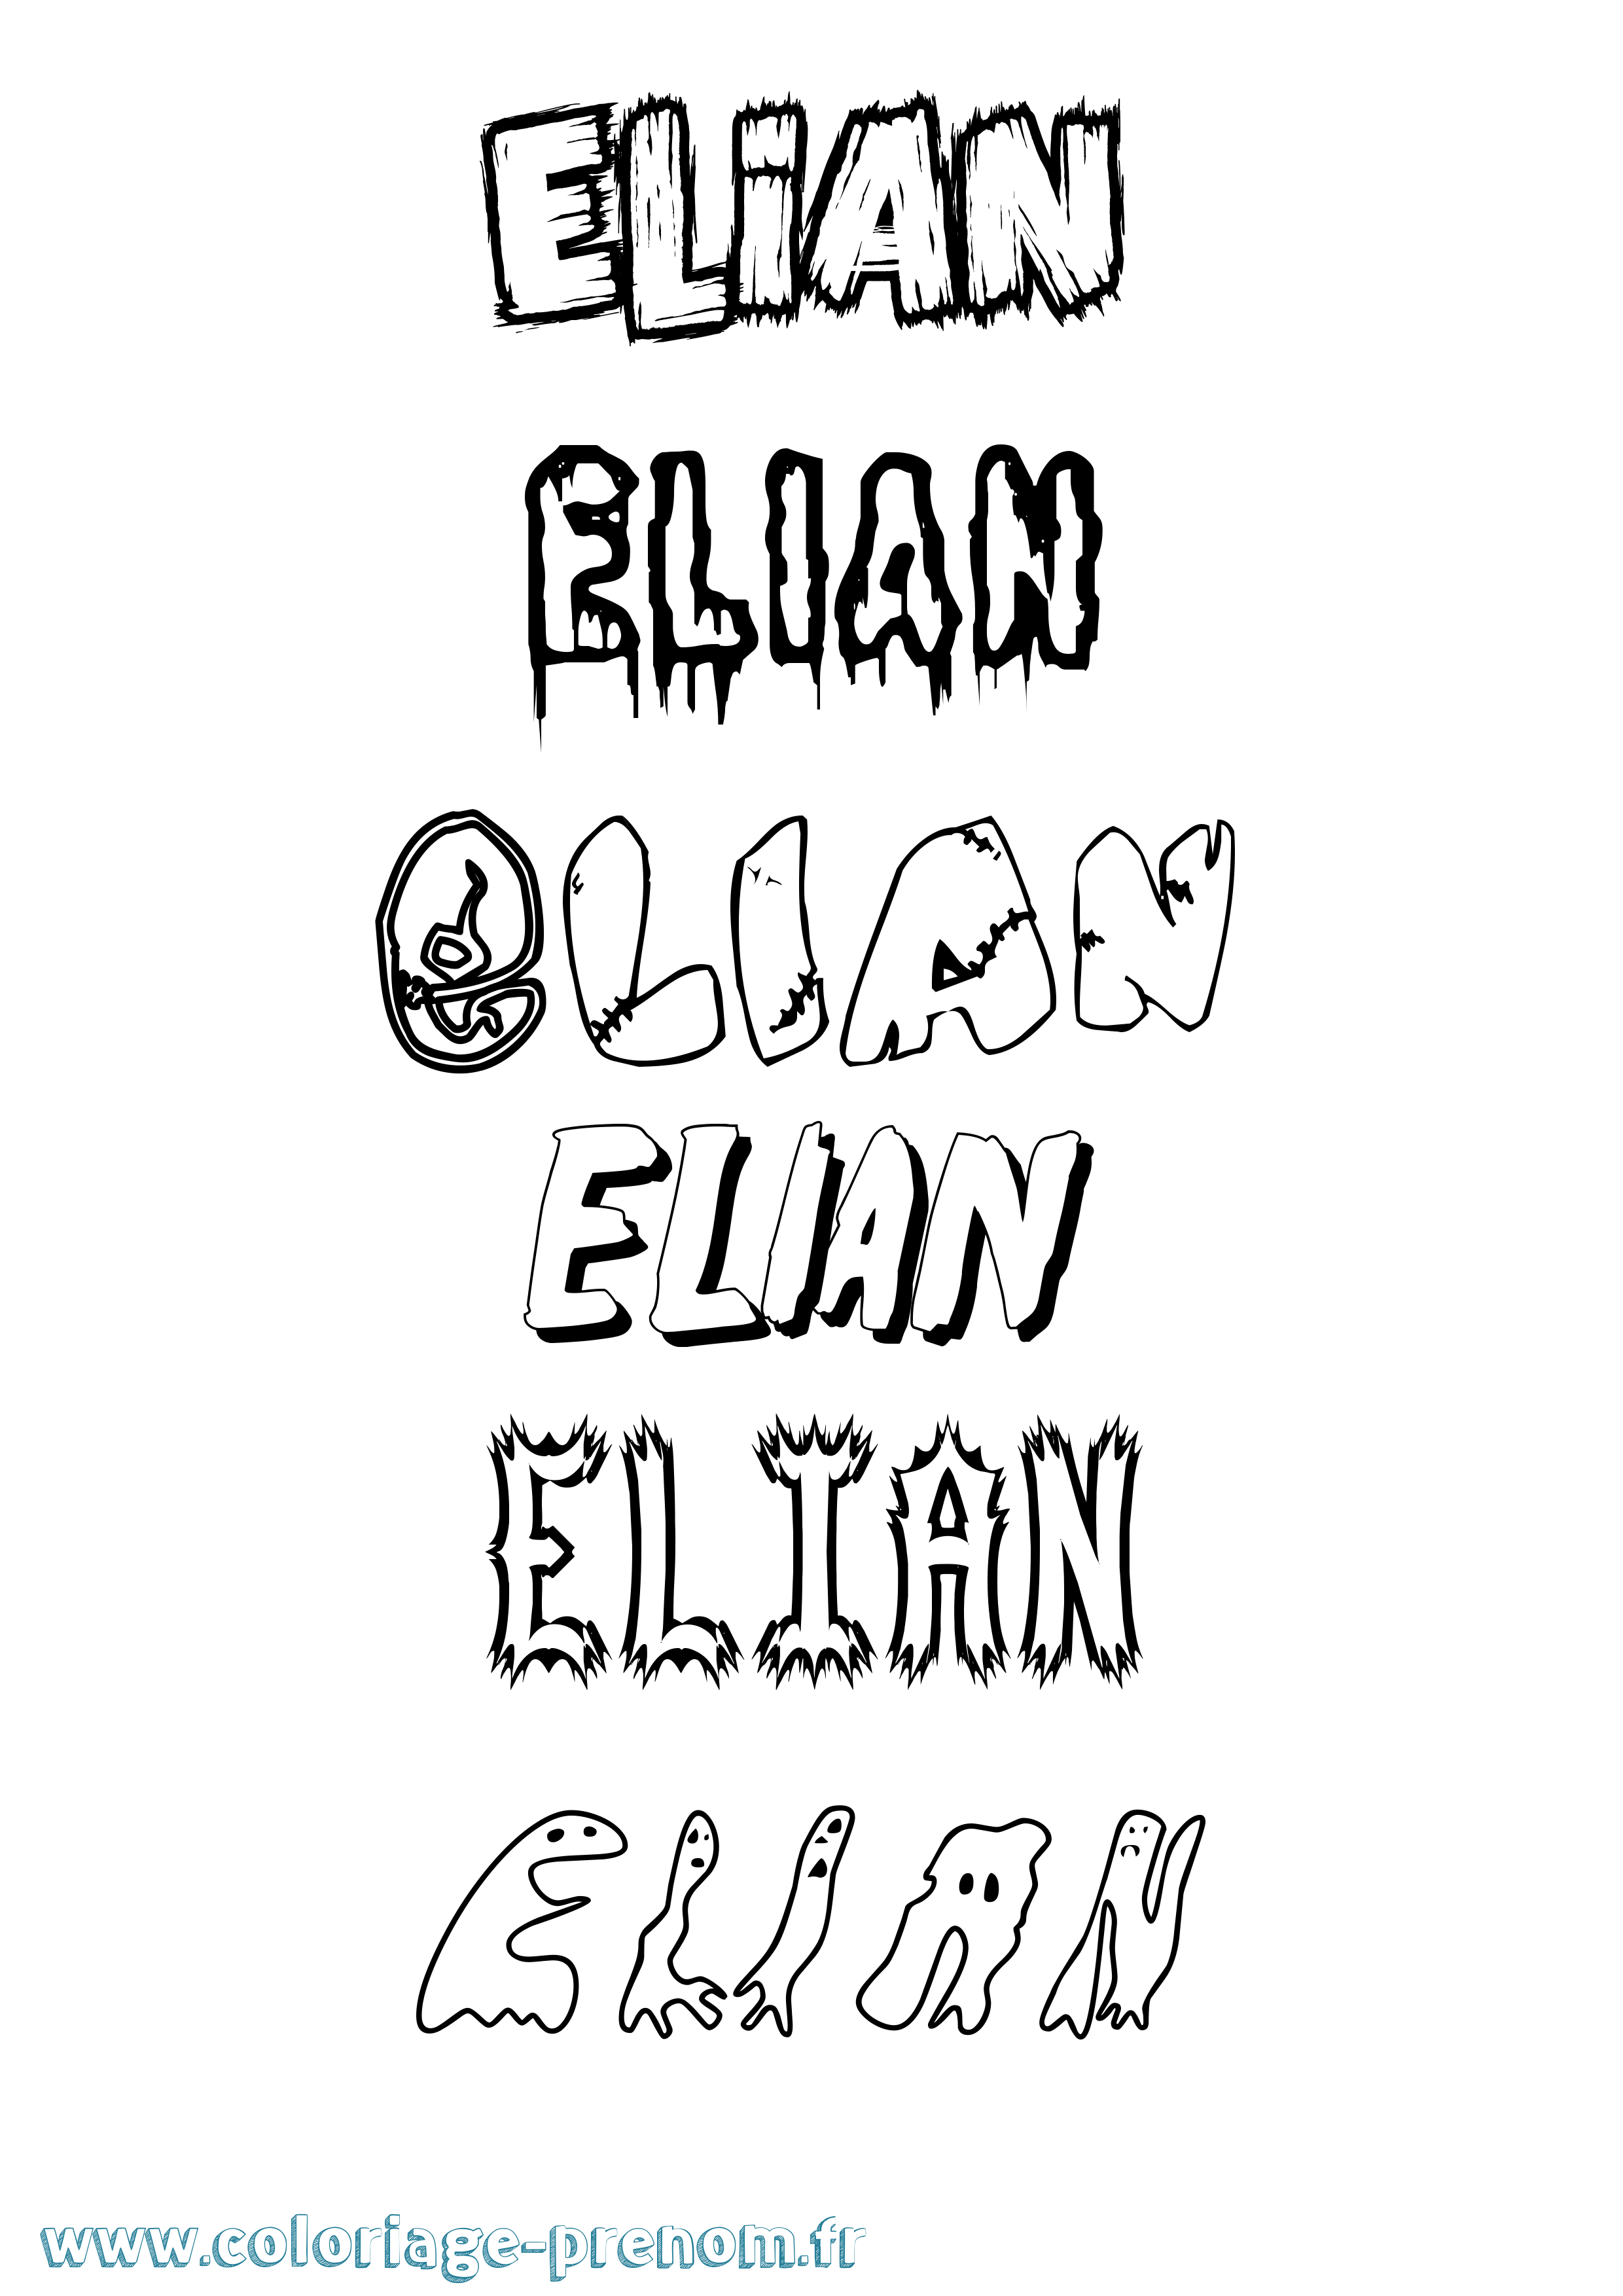 Coloriage prénom Elian